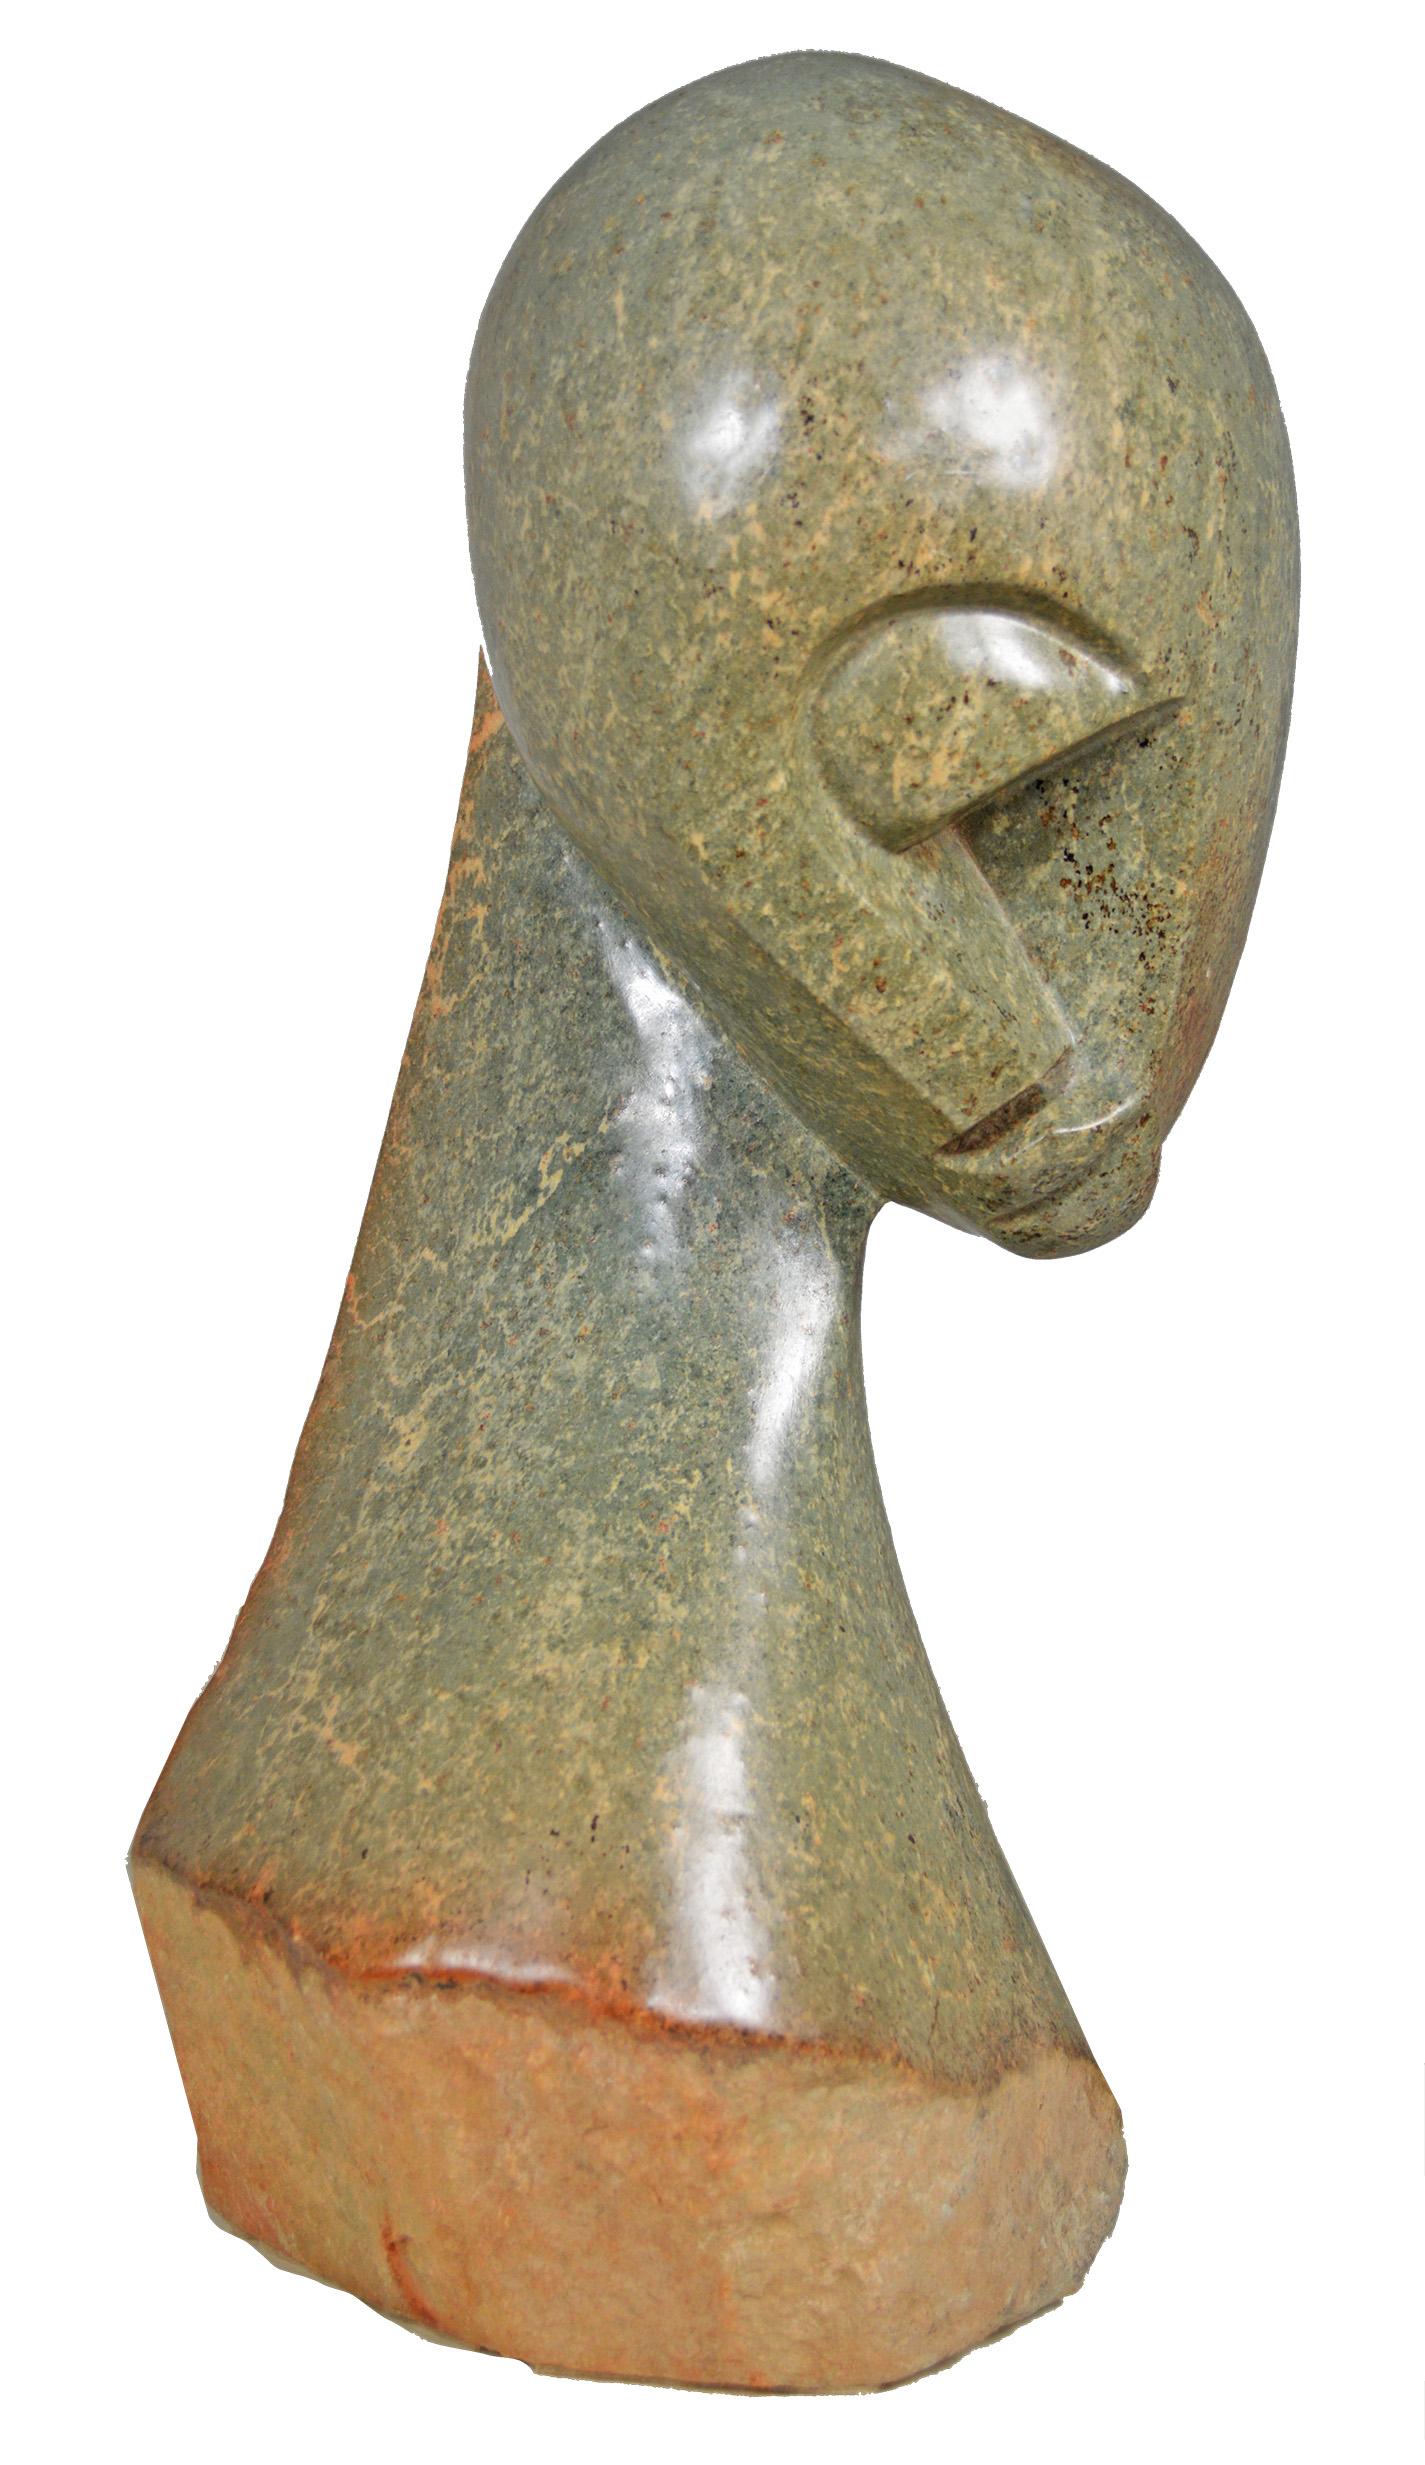 Eye Witness" est une sculpture originale en opale serpentine signée par l'artiste zimbabwéen Josphat Makenzi. Makenzi a été formé dans la tradition contemporaine de la sculpture sur pierre Shona, et ses œuvres reprennent donc des thèmes de